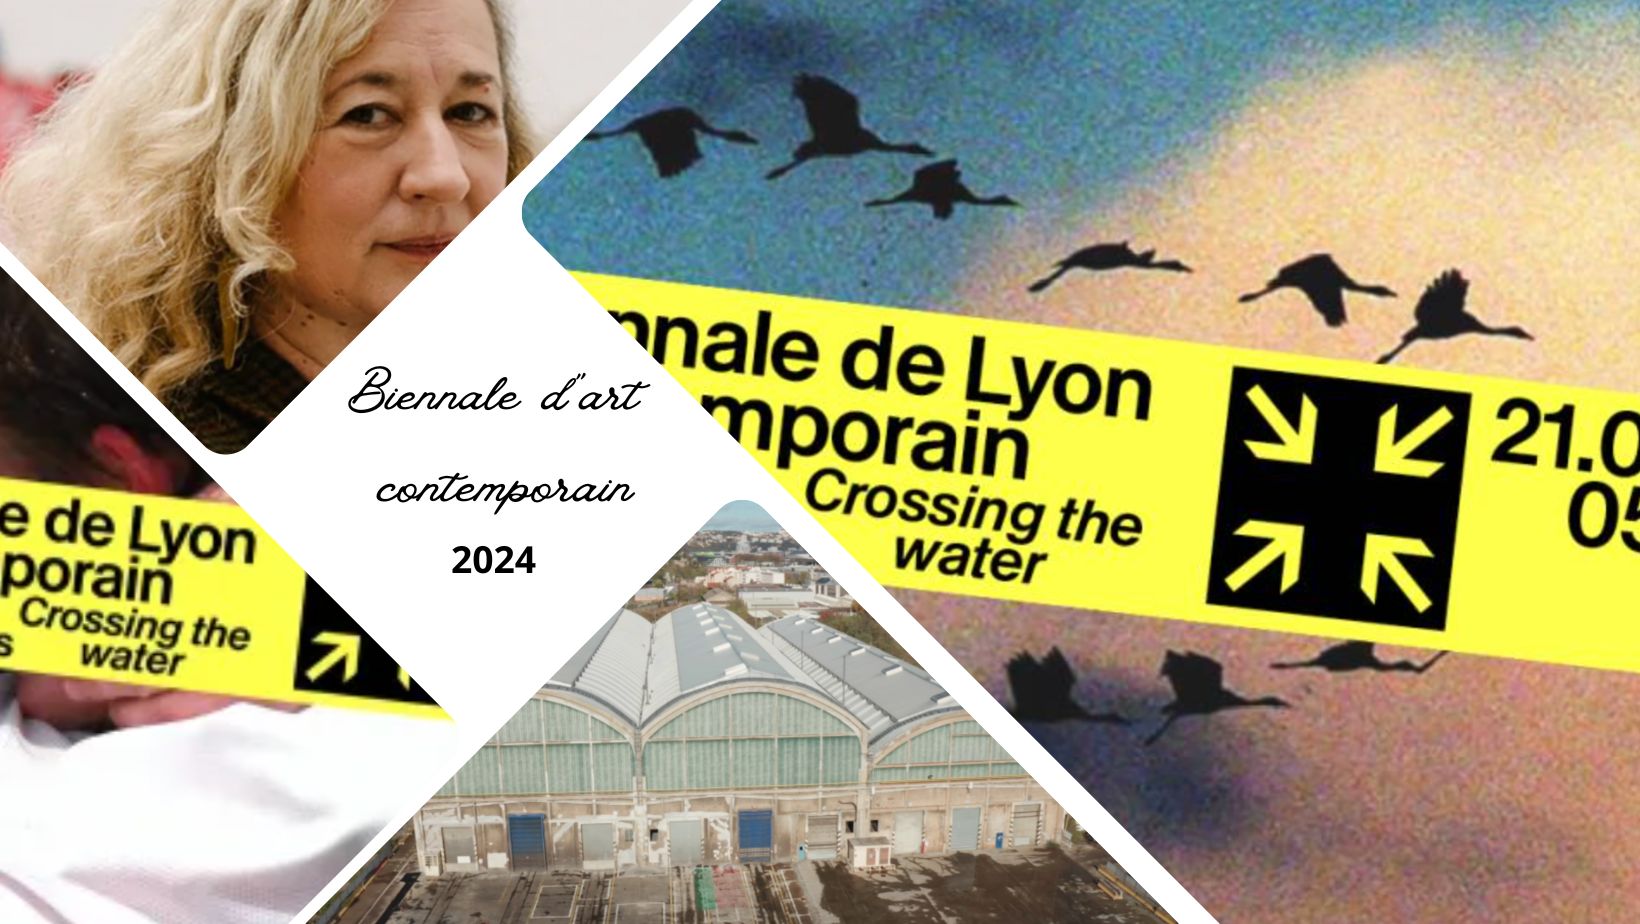 Biennale d'art contemporain de Lyon 2024 : le programme et les tarifs